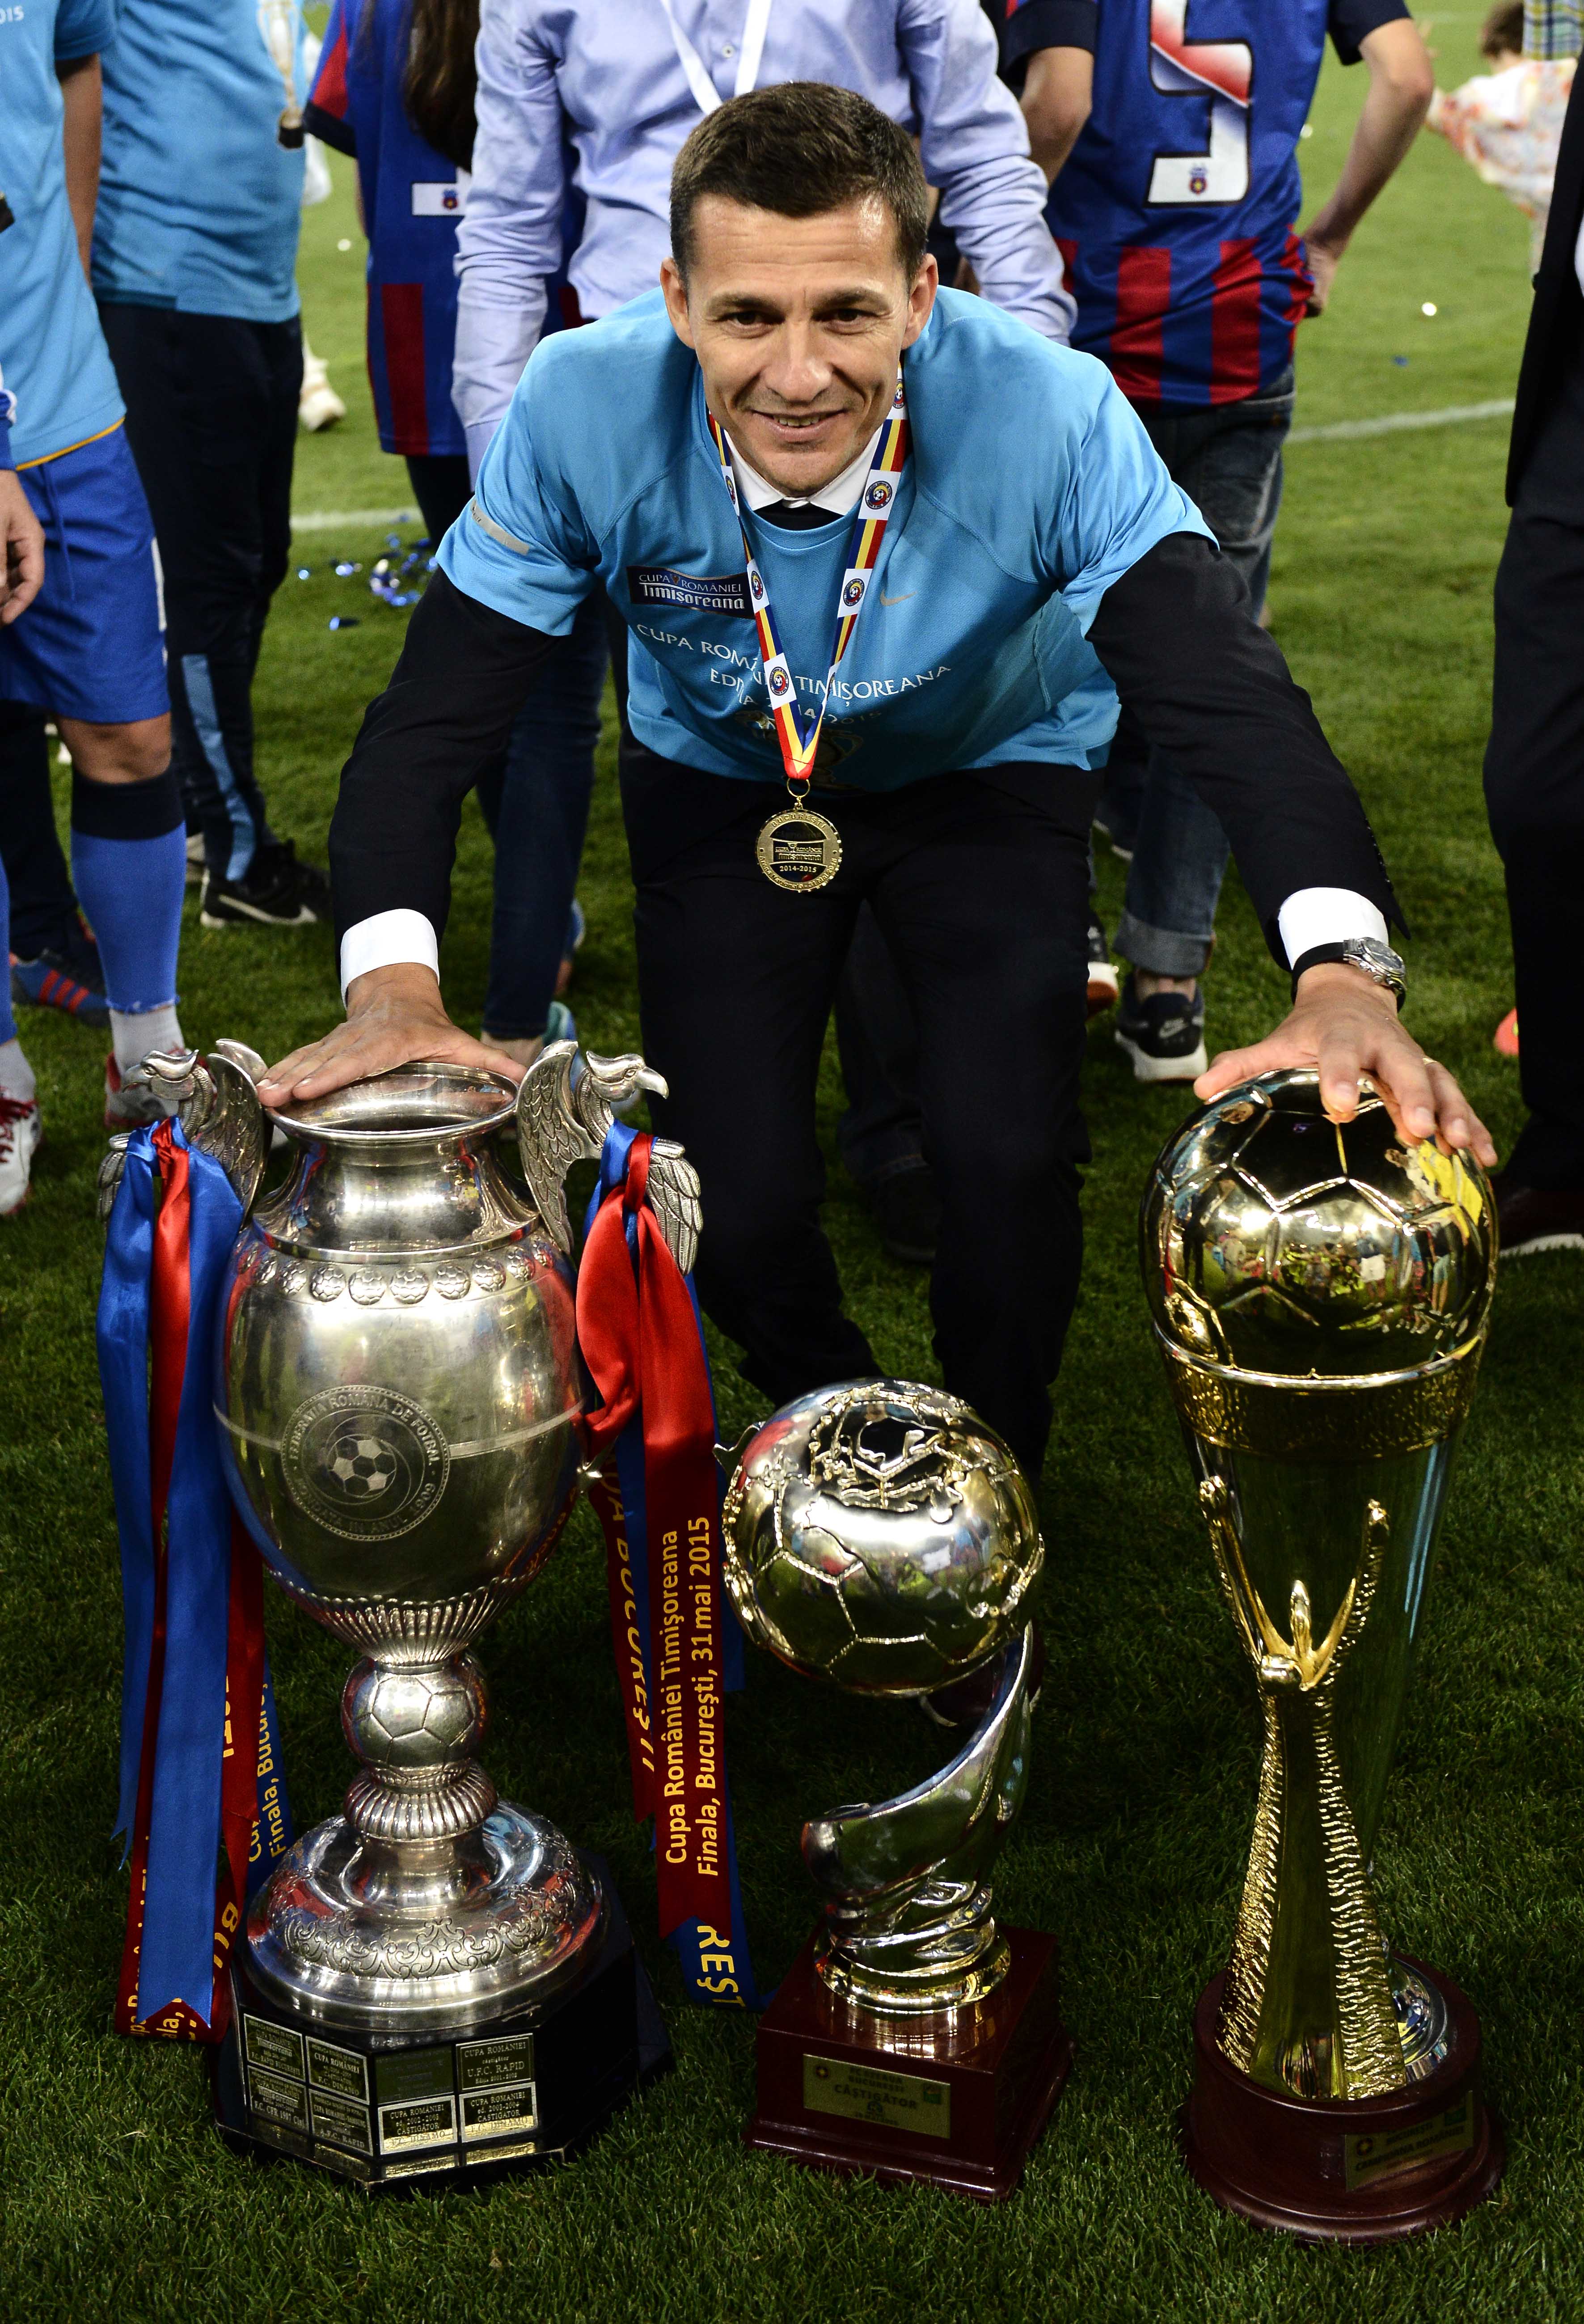 Constantin Gâlcă a intrat în istoria fotbalului românesc, fiind singurul tehnician care a reușit tripla istorică: Campionat, Cupa României și Cupa Ligii